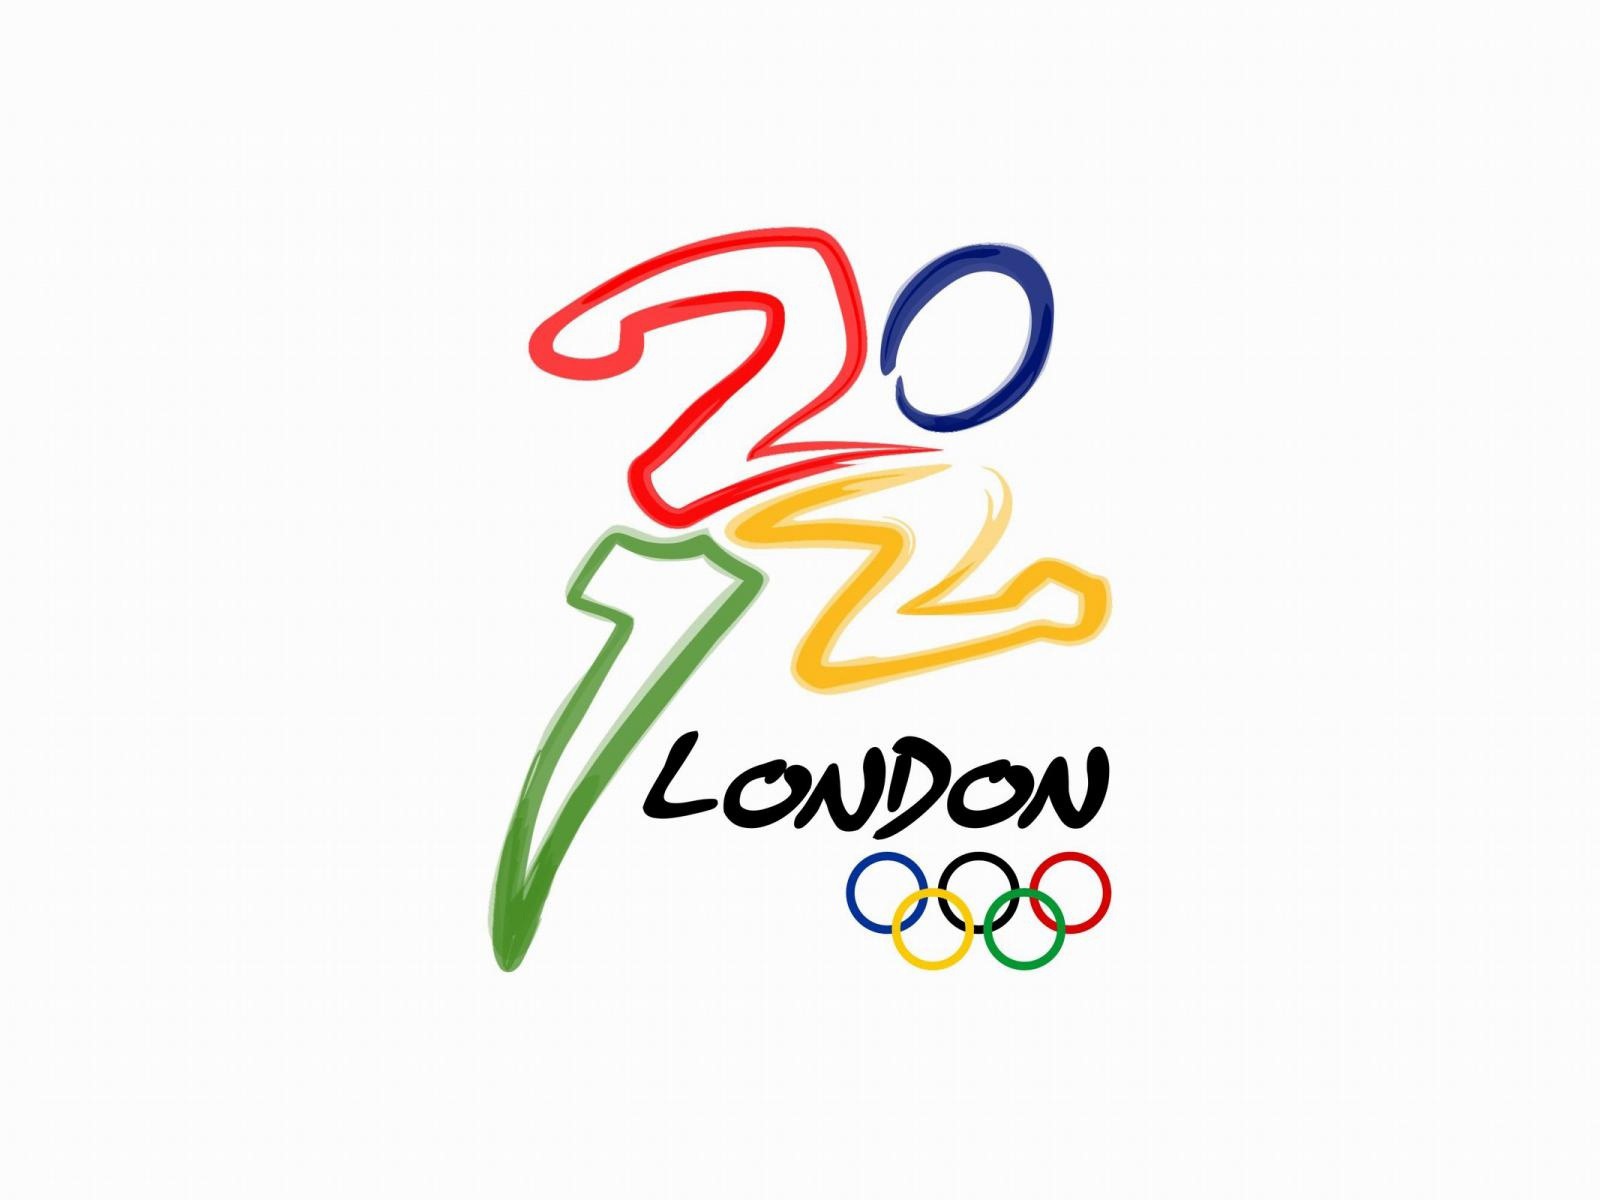 Londres 2012 Olimpiadas fondos temáticos (2) #22 - 1600x1200